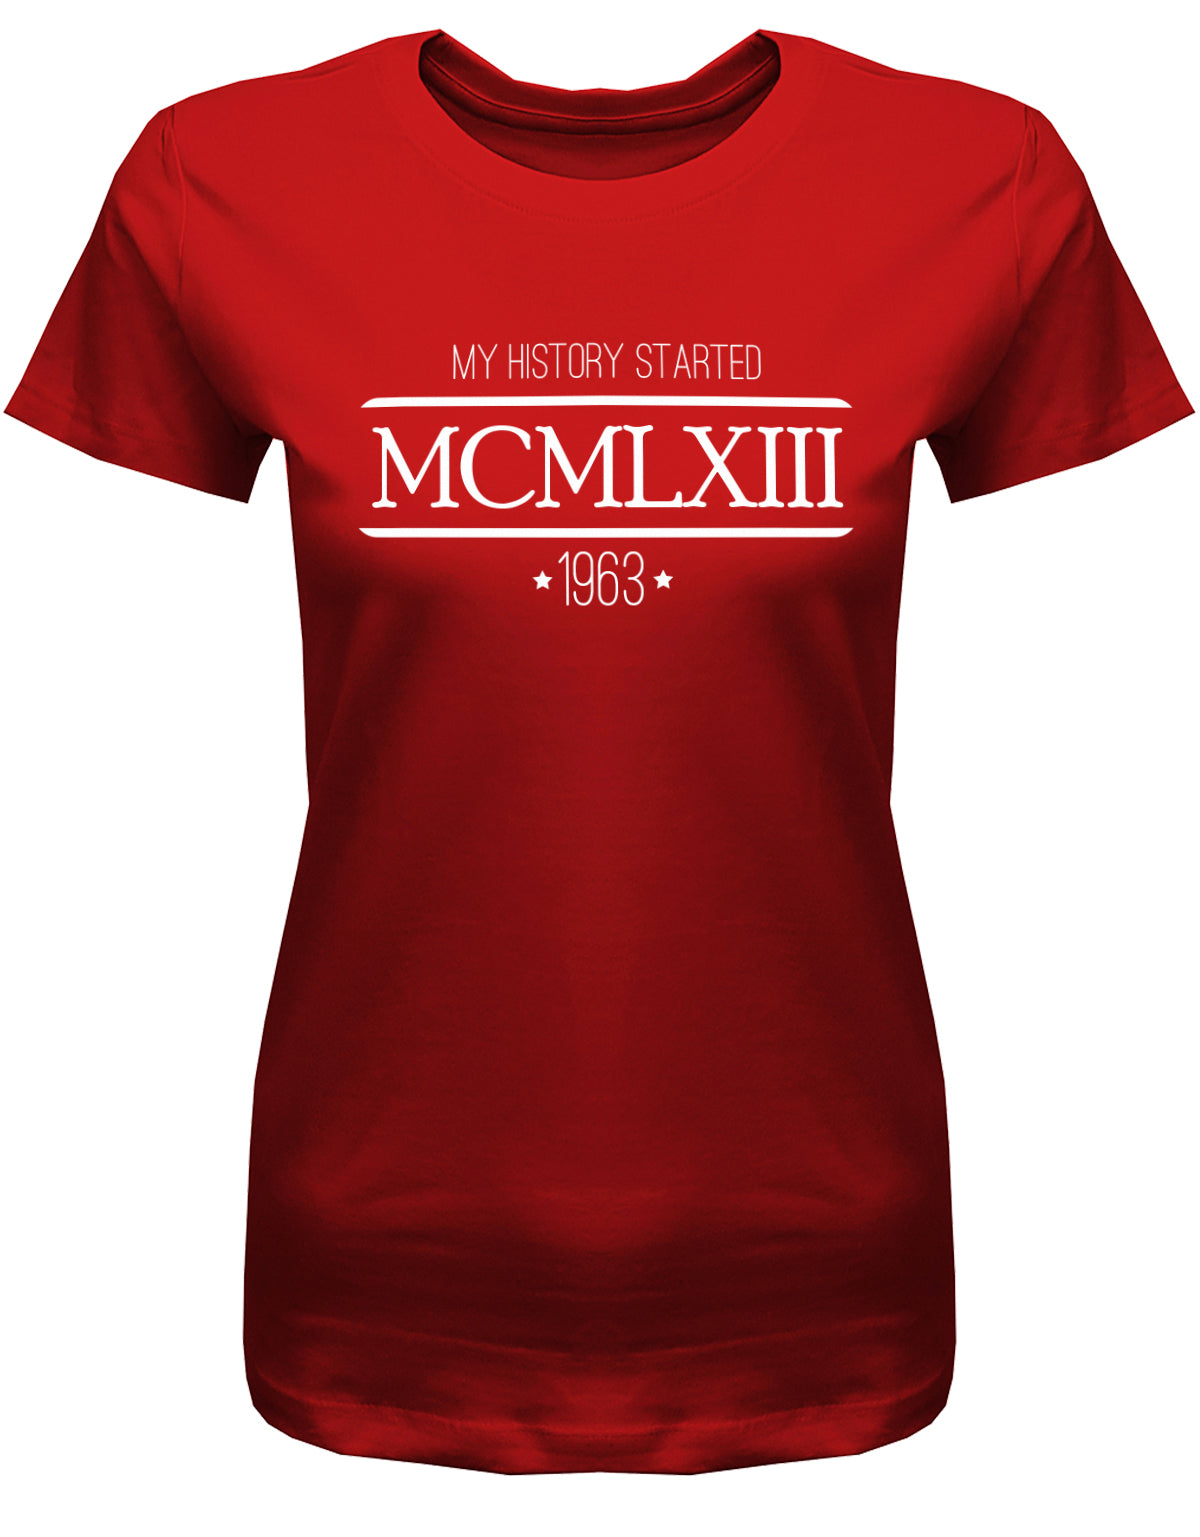 my history started 1963 - MCMLXIII römische Zahlen - Jahrgang 1963 Geschenk Frauen Shirt